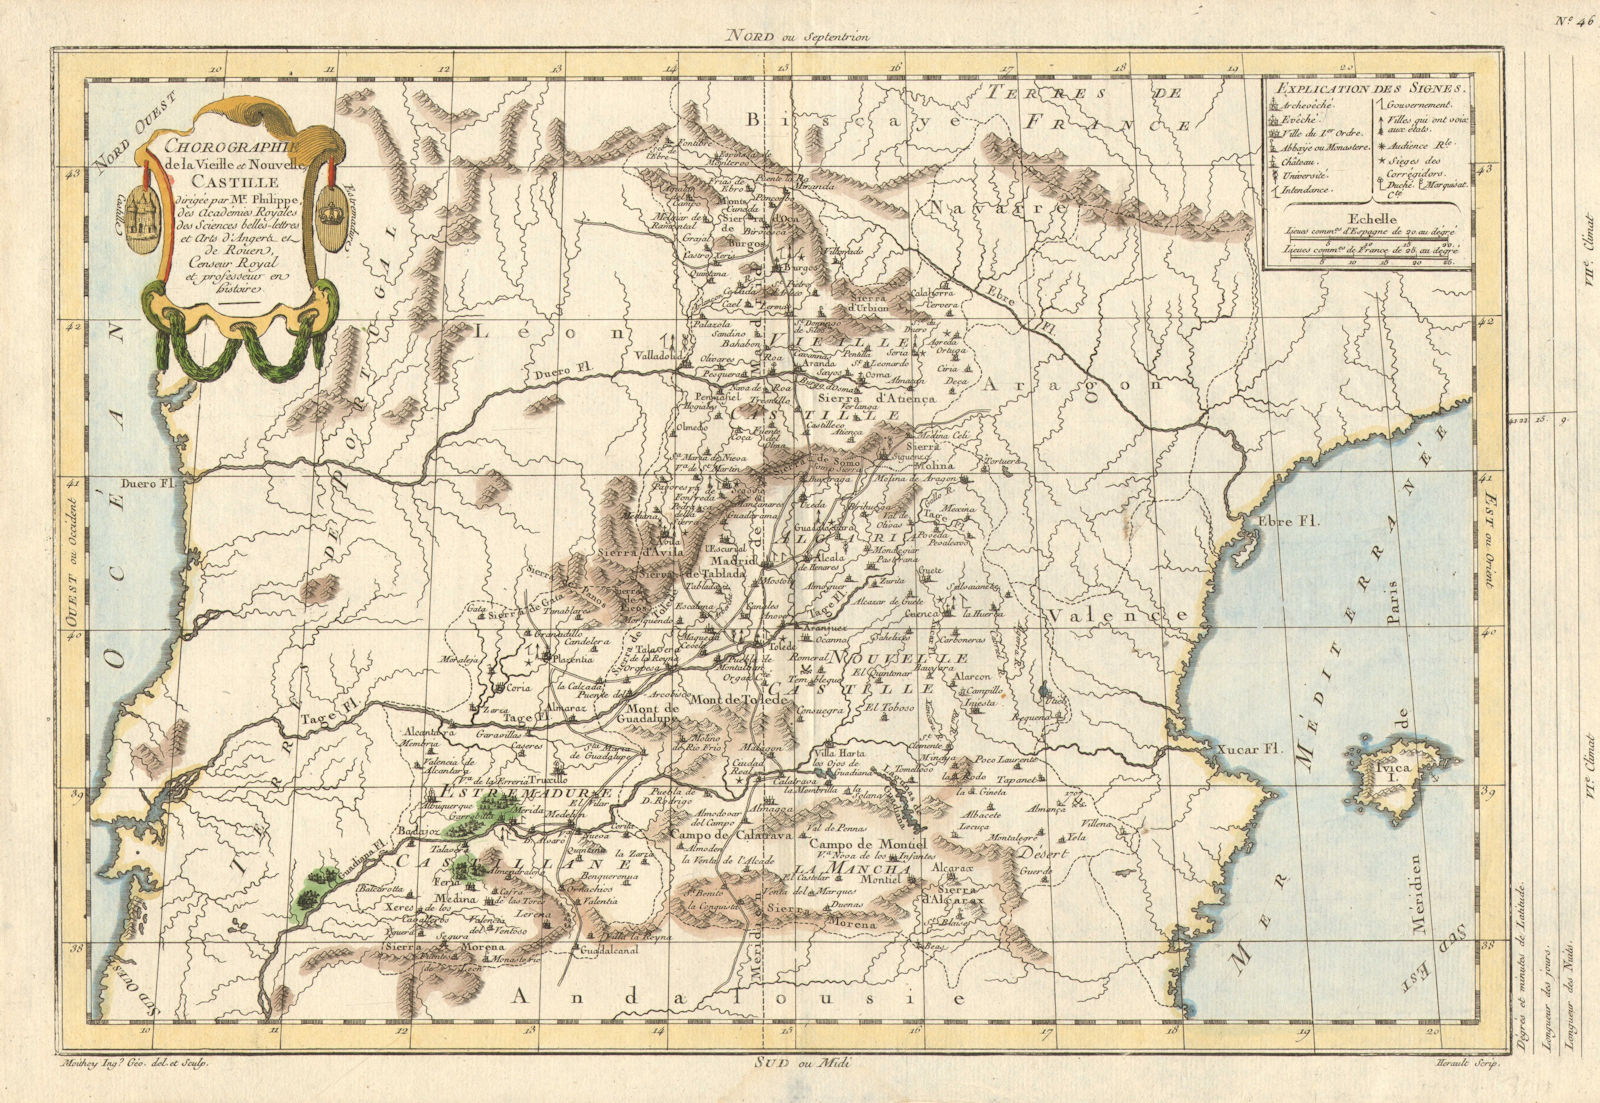 Associate Product 'Chorographie de la Vieille et Nouvelle Castille' by Prétot. Castile 1787 map